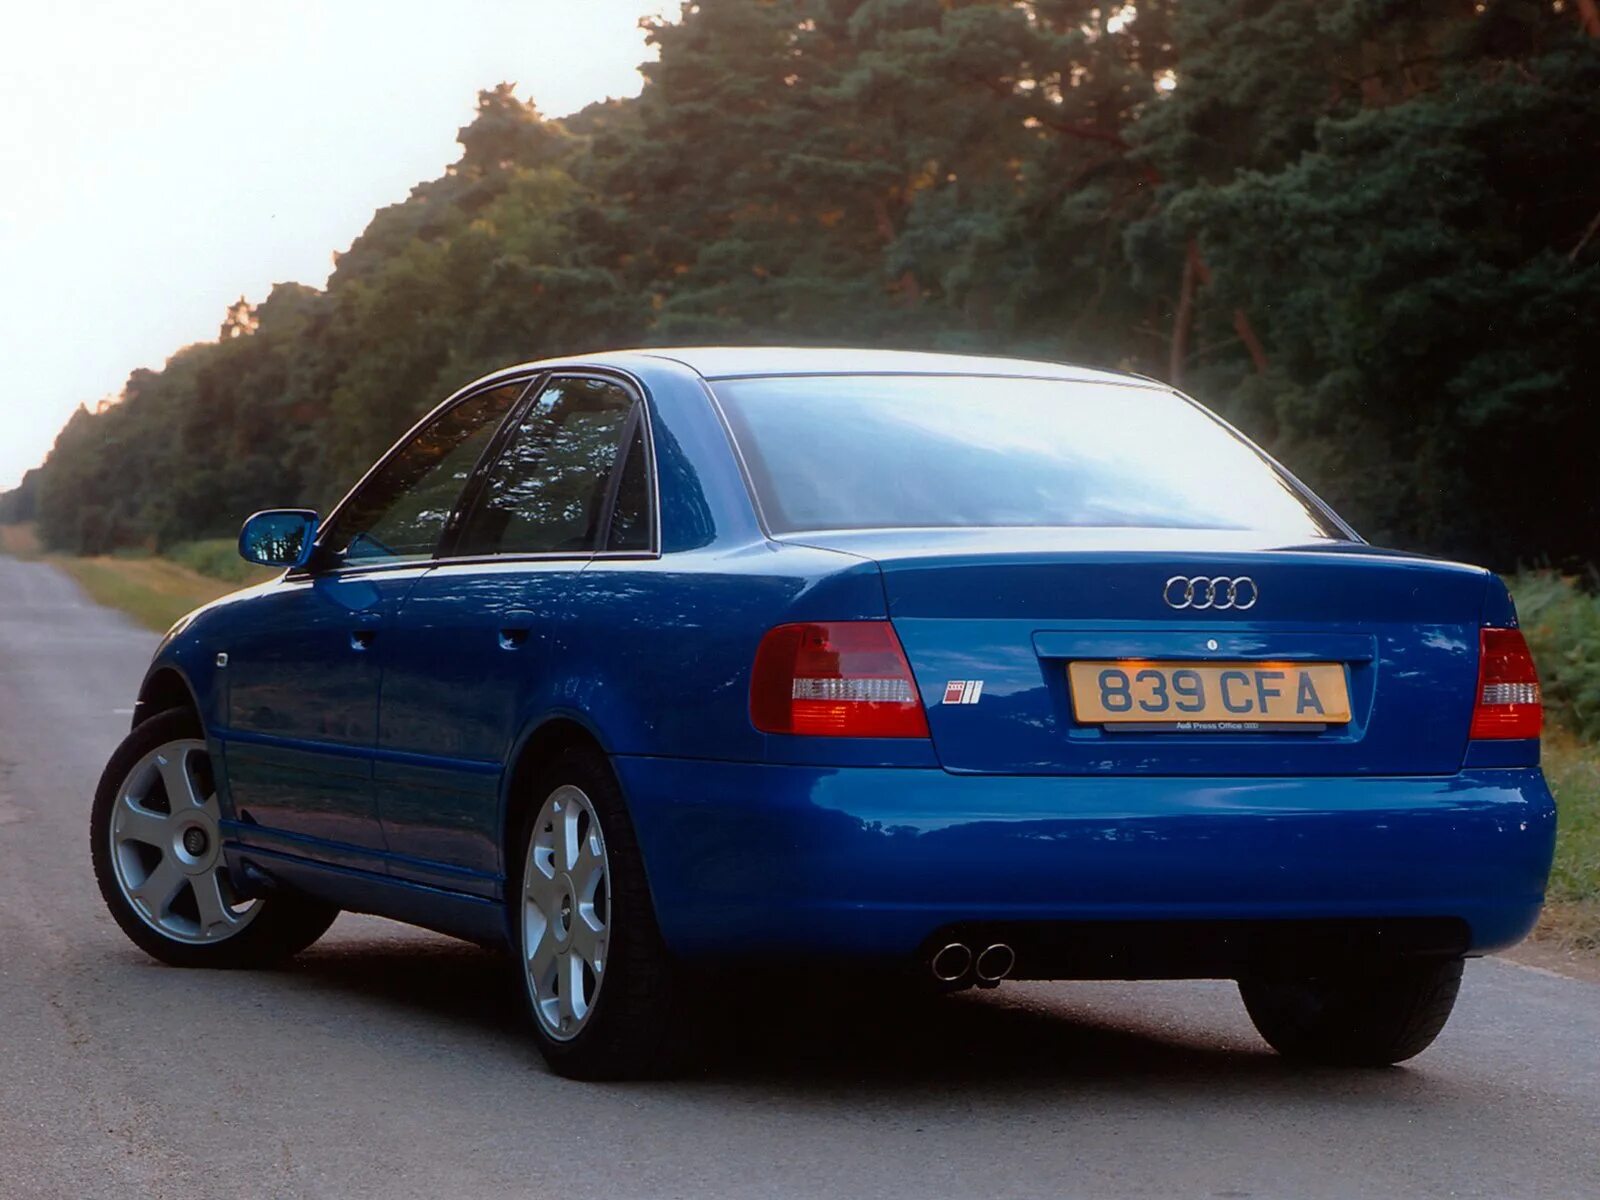 Audi a4 b5 2000. Ауди s4 1996. Audi s4 1997. Audi a4 b5 1996. Ауди а4 б5 2000 года